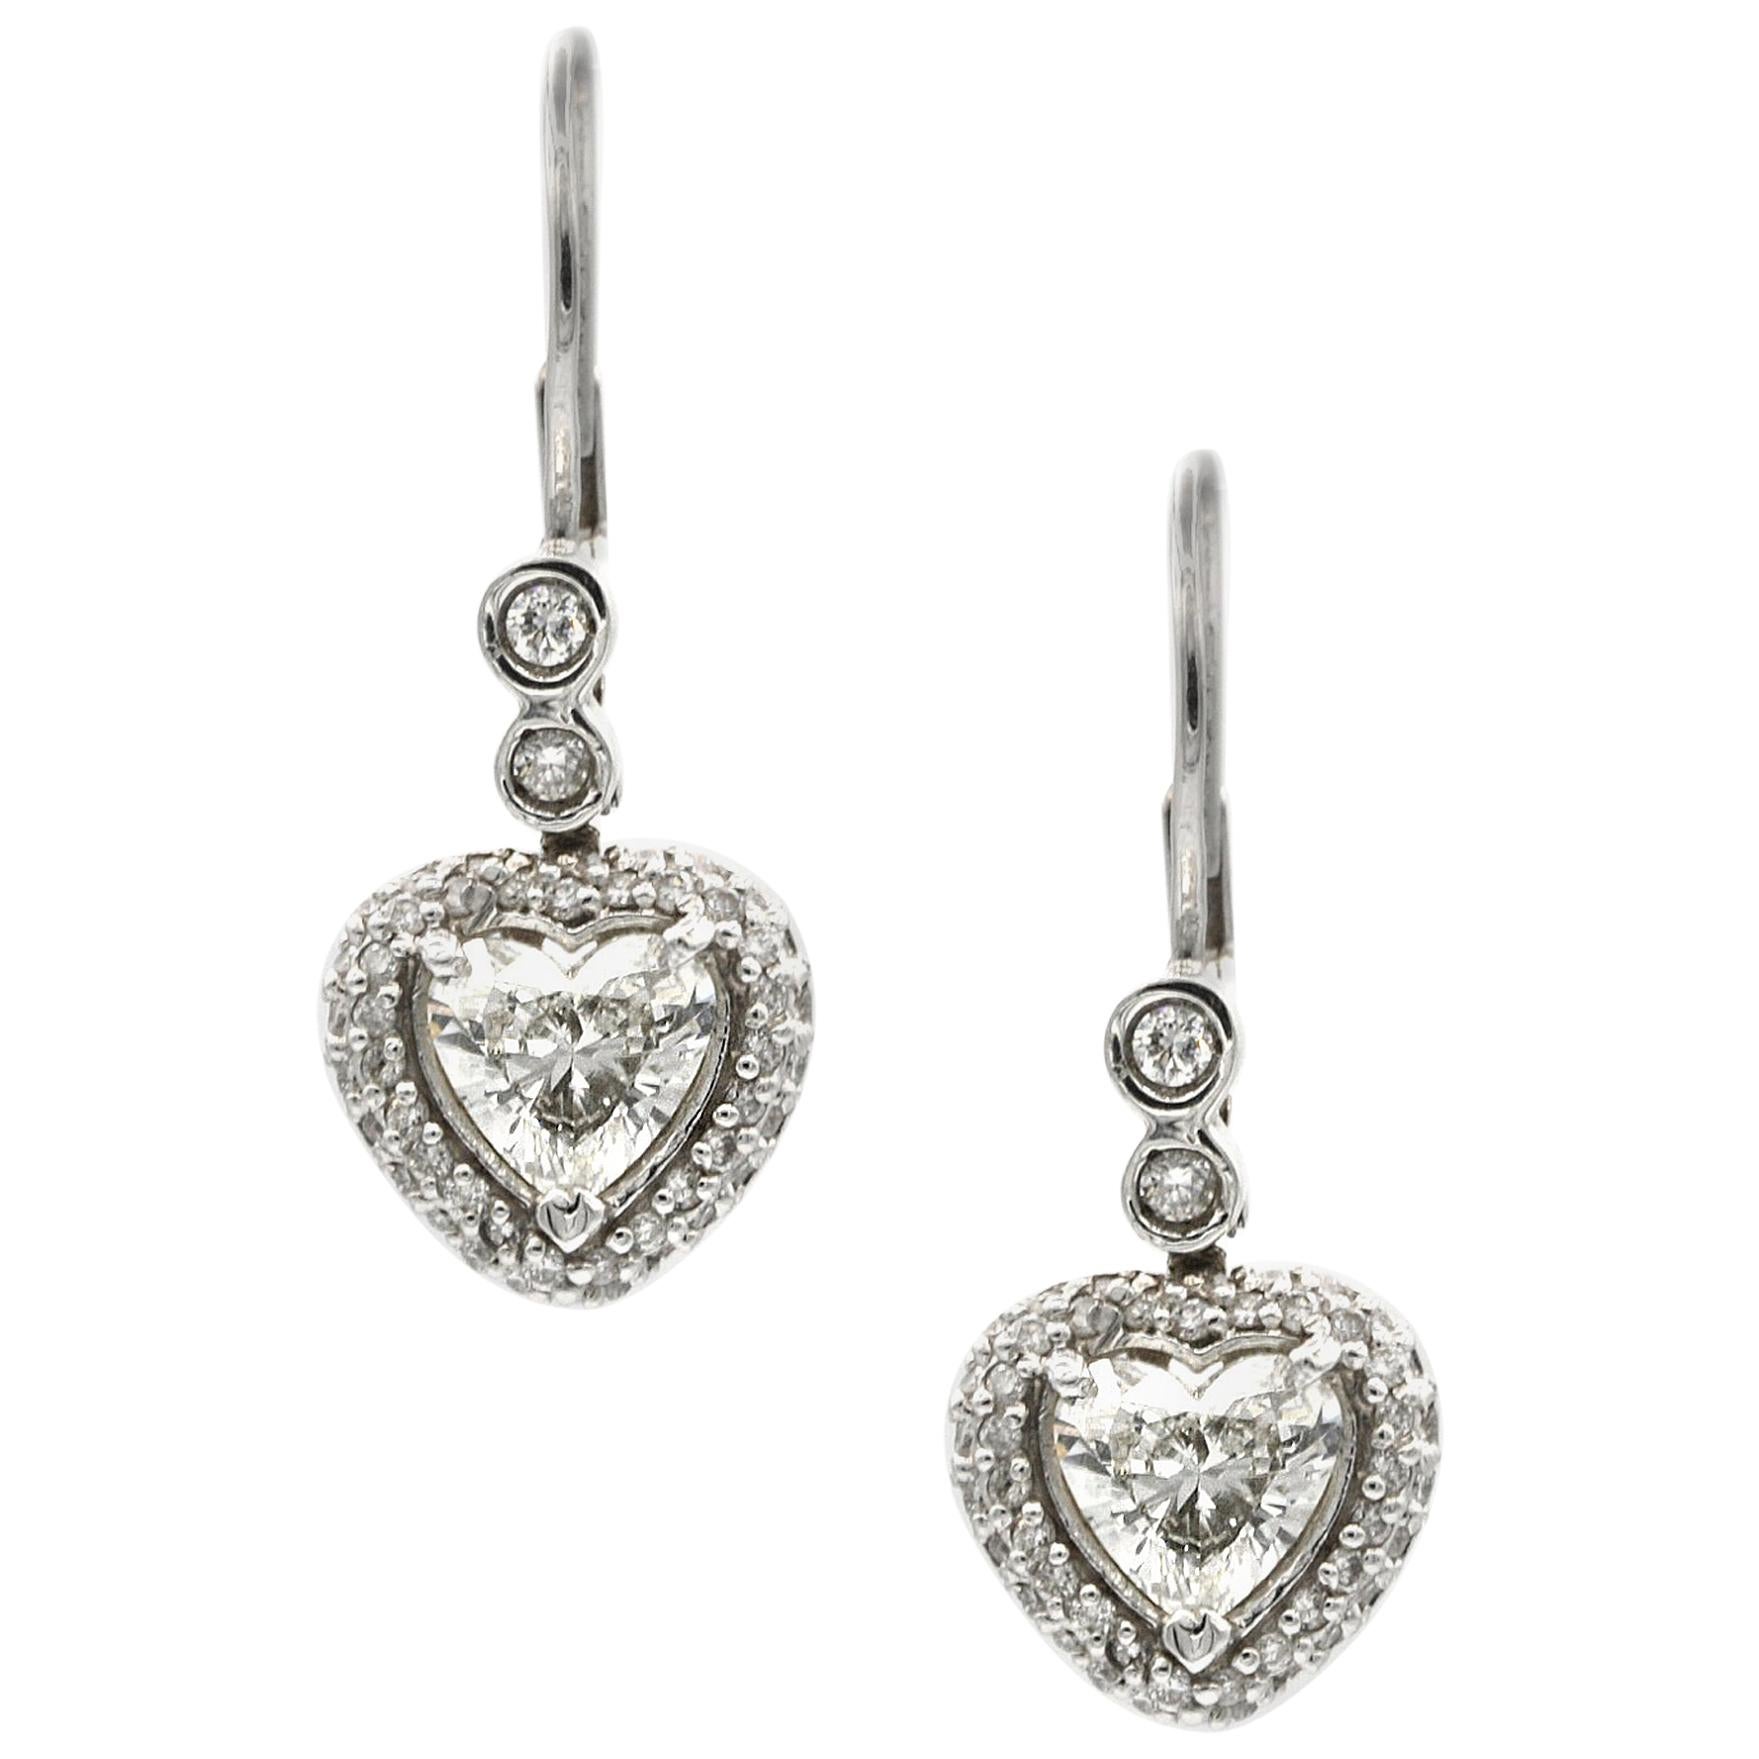 1.74 Carat Heart Shaped White Diamond Earrings in 14 Karat White Gold For Sale